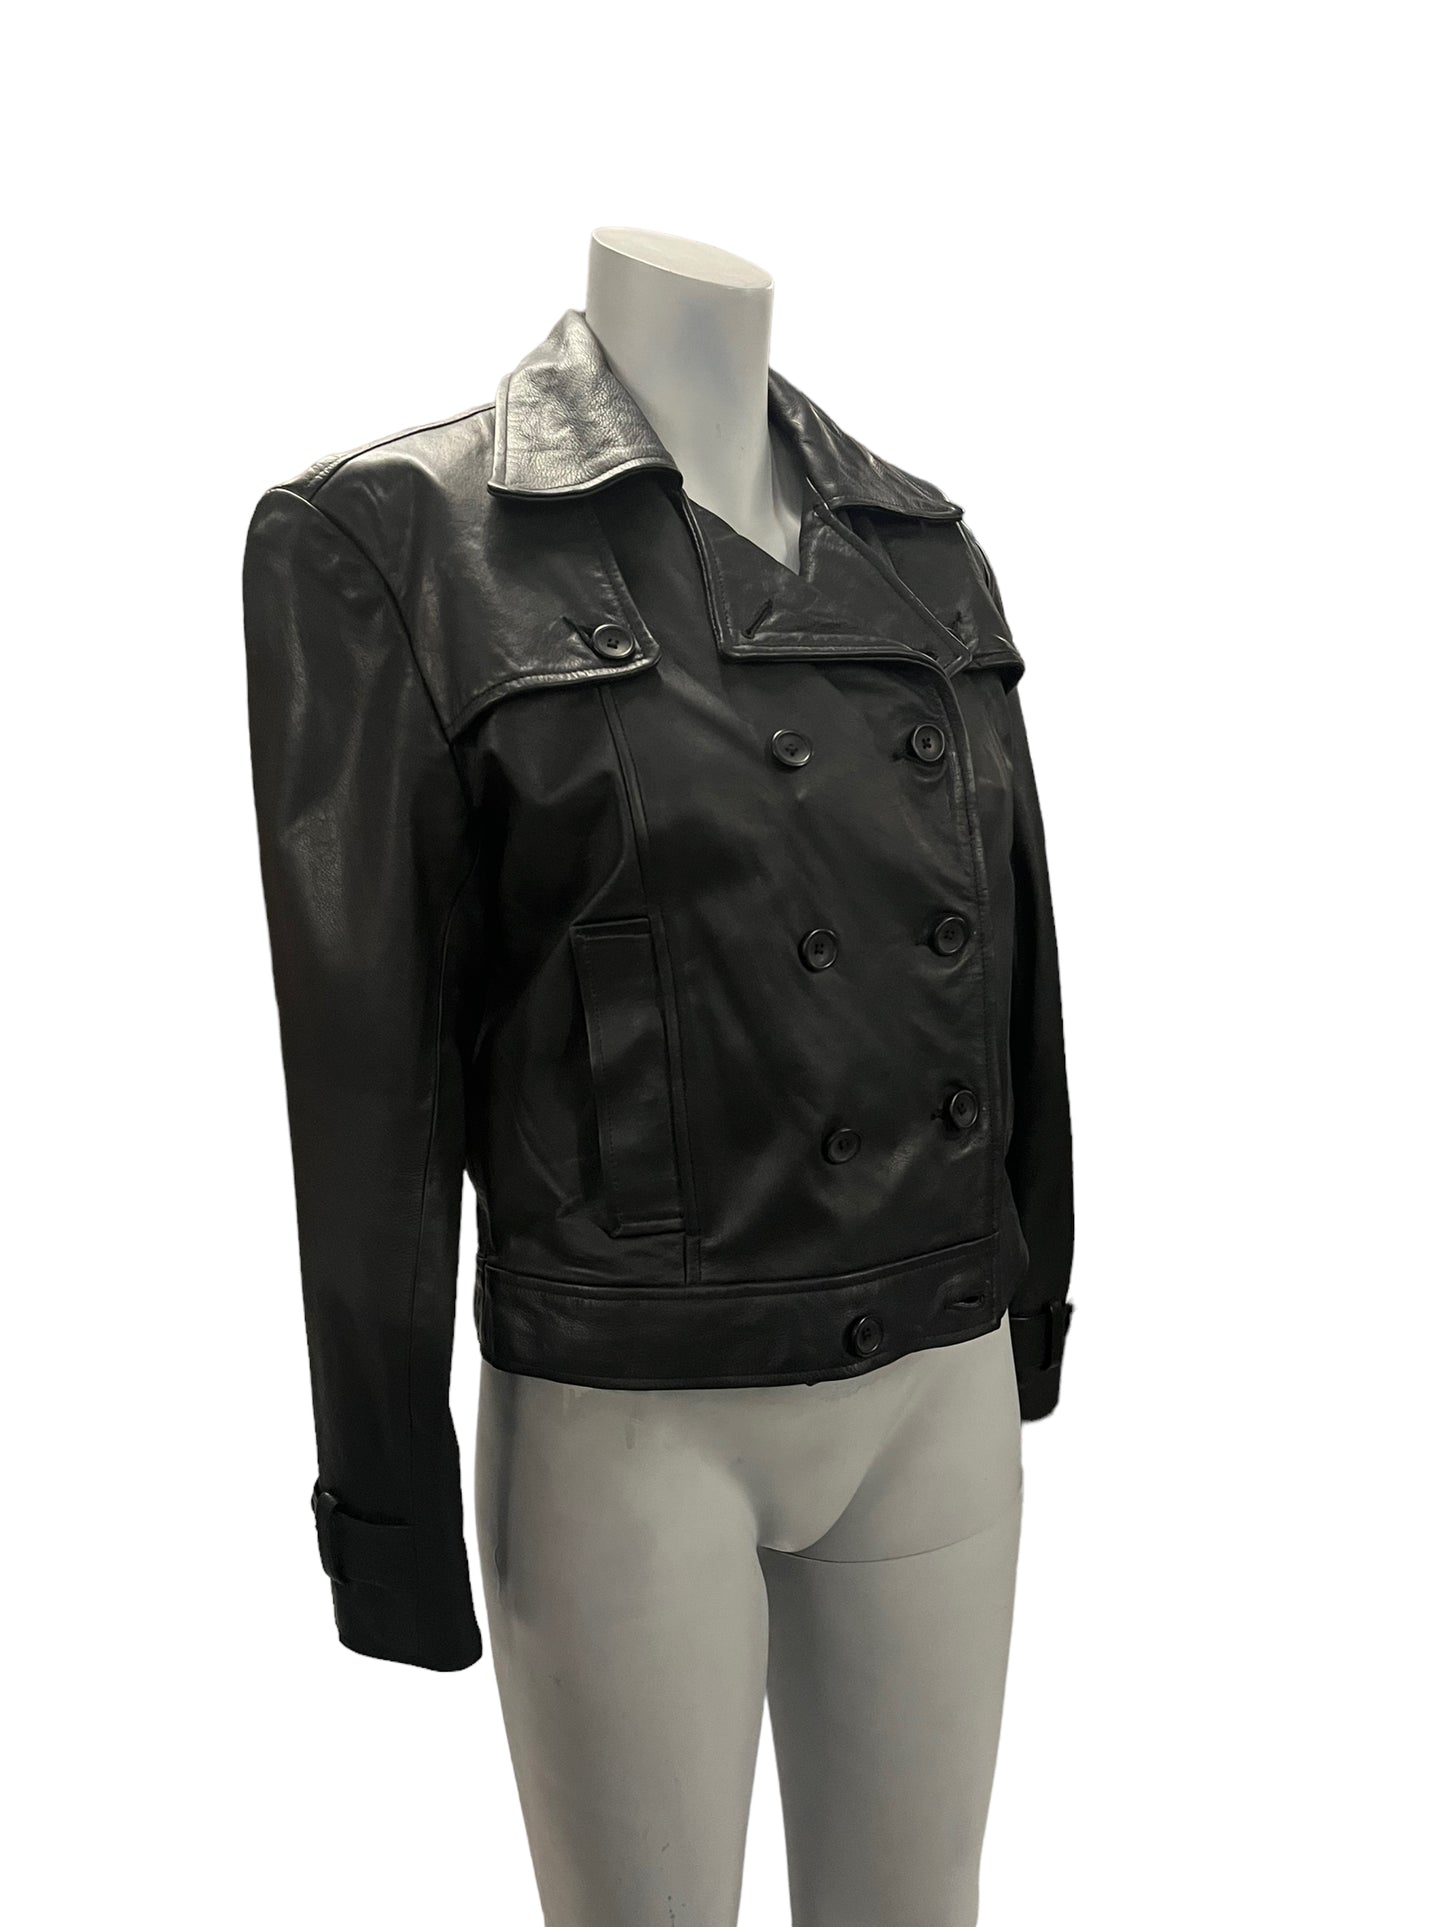 Fashion World - LL115 - Black Leather Jacket - Size S